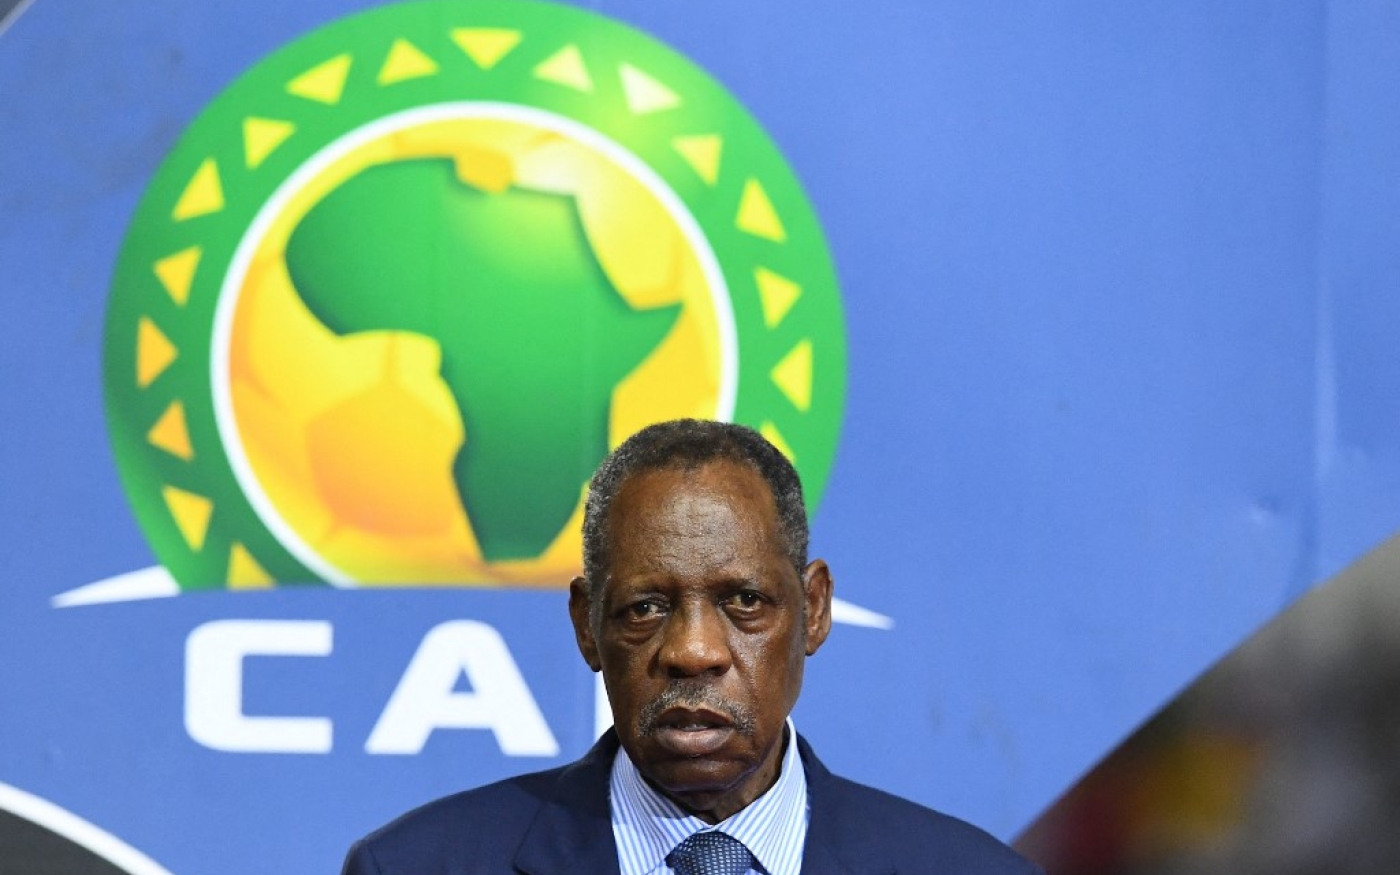 Pour Issa Hayatou, ex-président de la la Confédération africaine de football, la CAN doit se jouer en hiver (AFP/Gabriel Bouys)